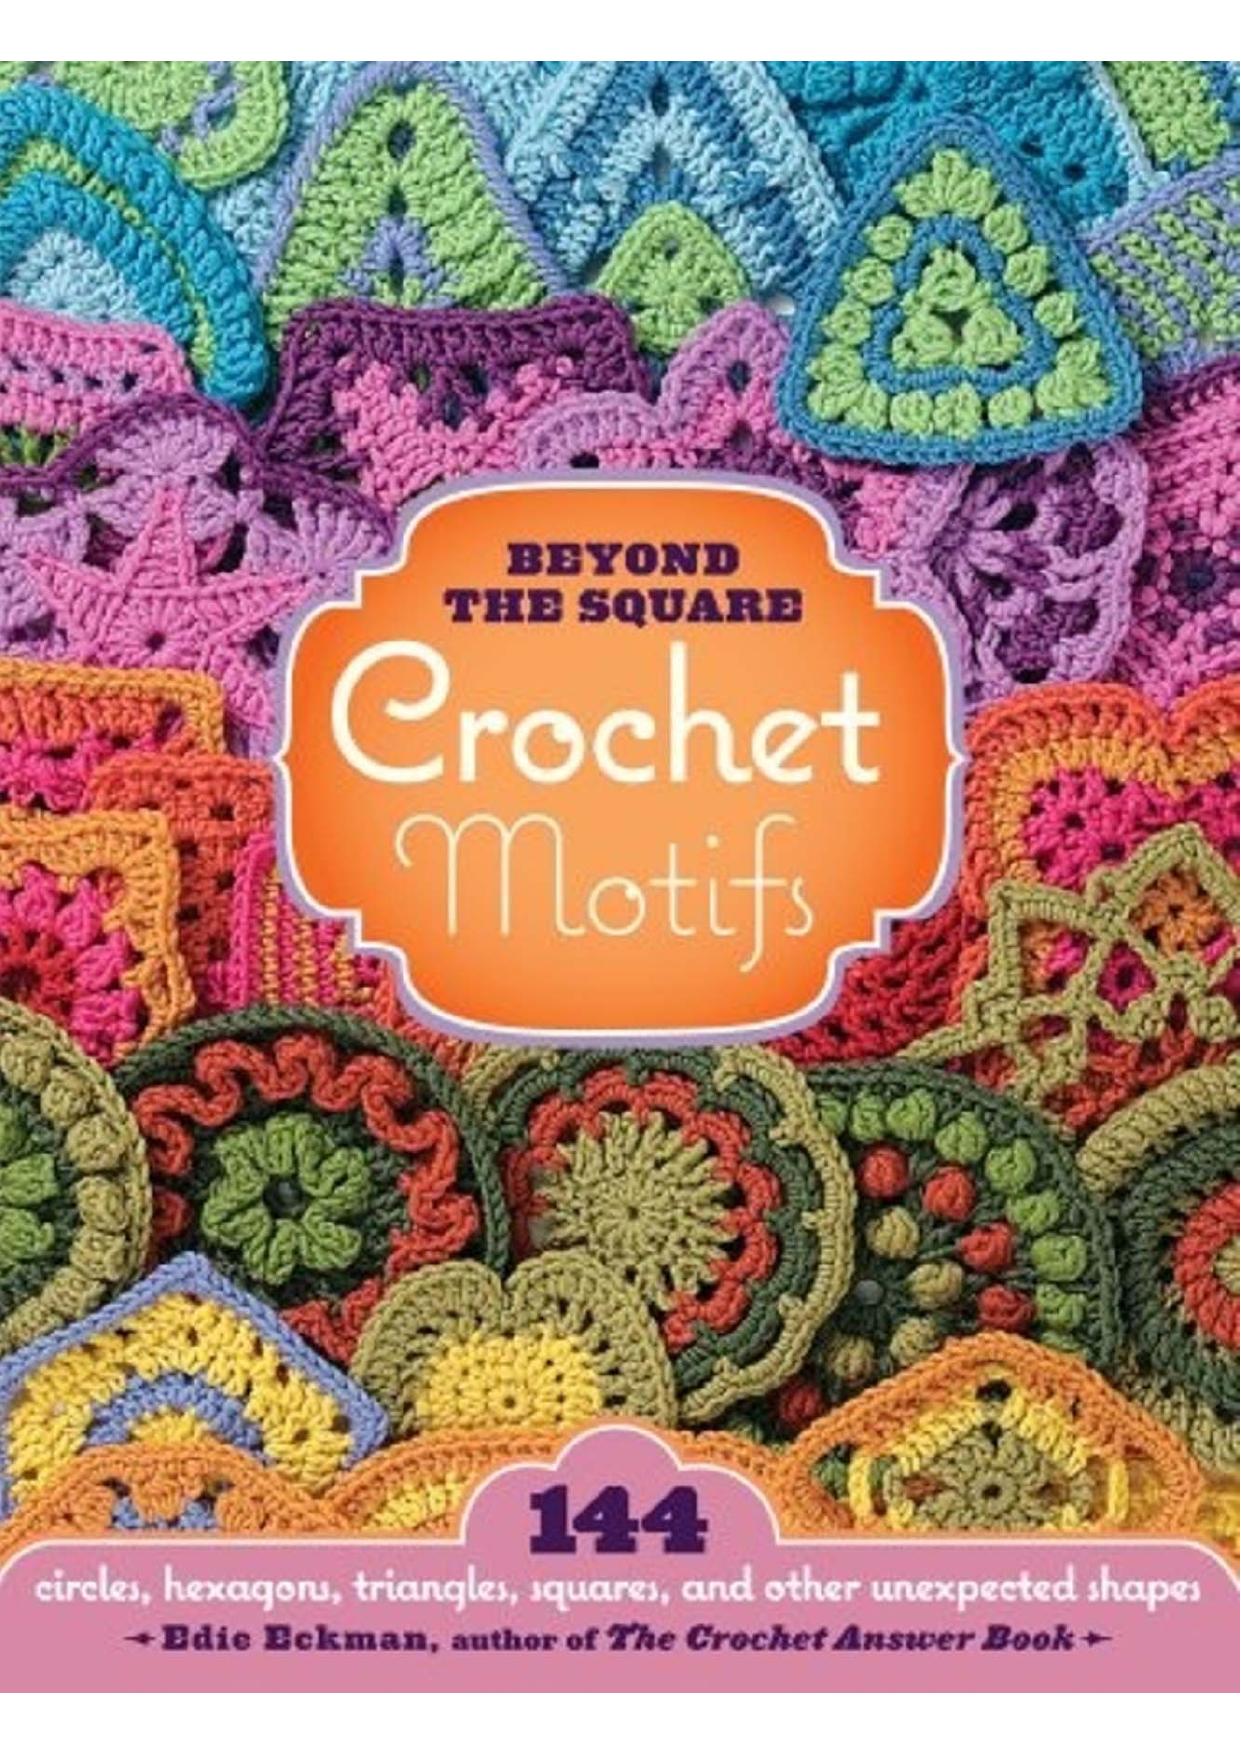 Beyond the Square Crochet Motifs by Edie Eckman